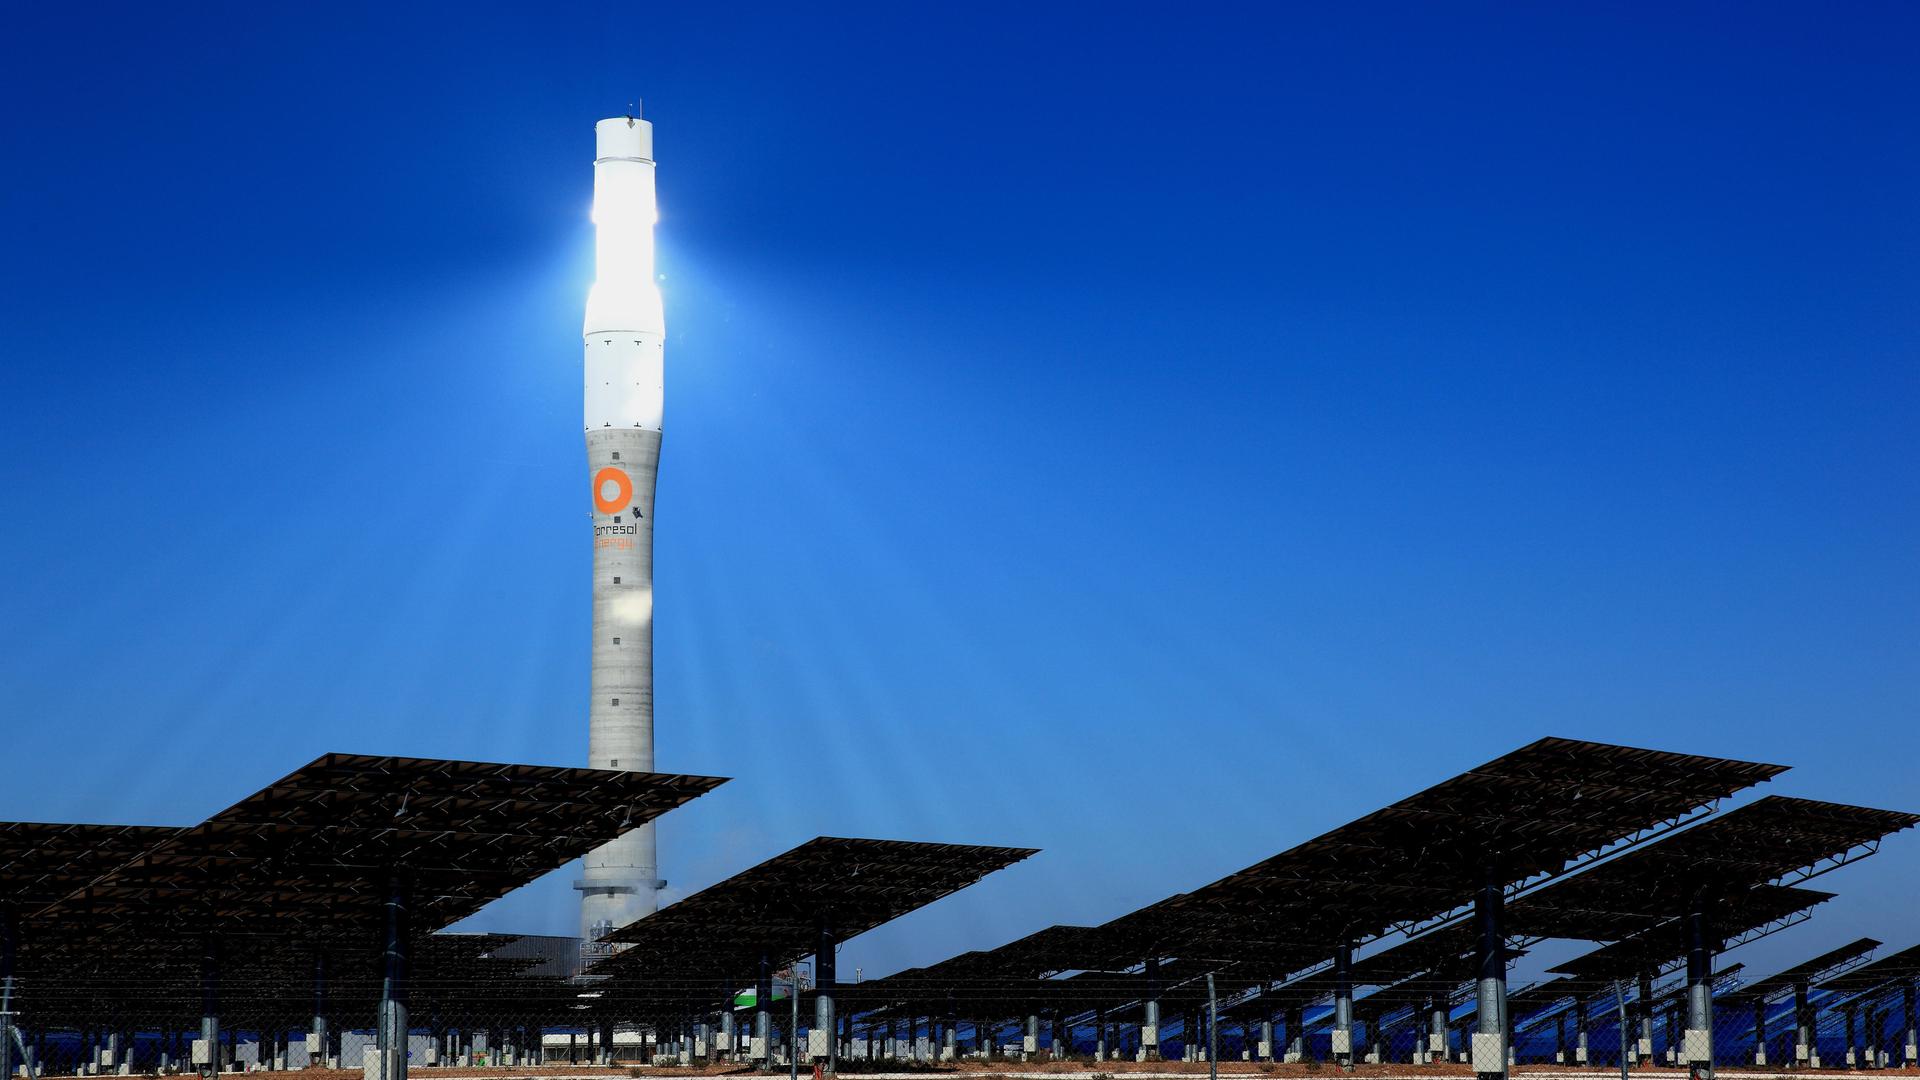 Ein hell erleuchteter Turm steht in der Nacht, davor Solarpanels.